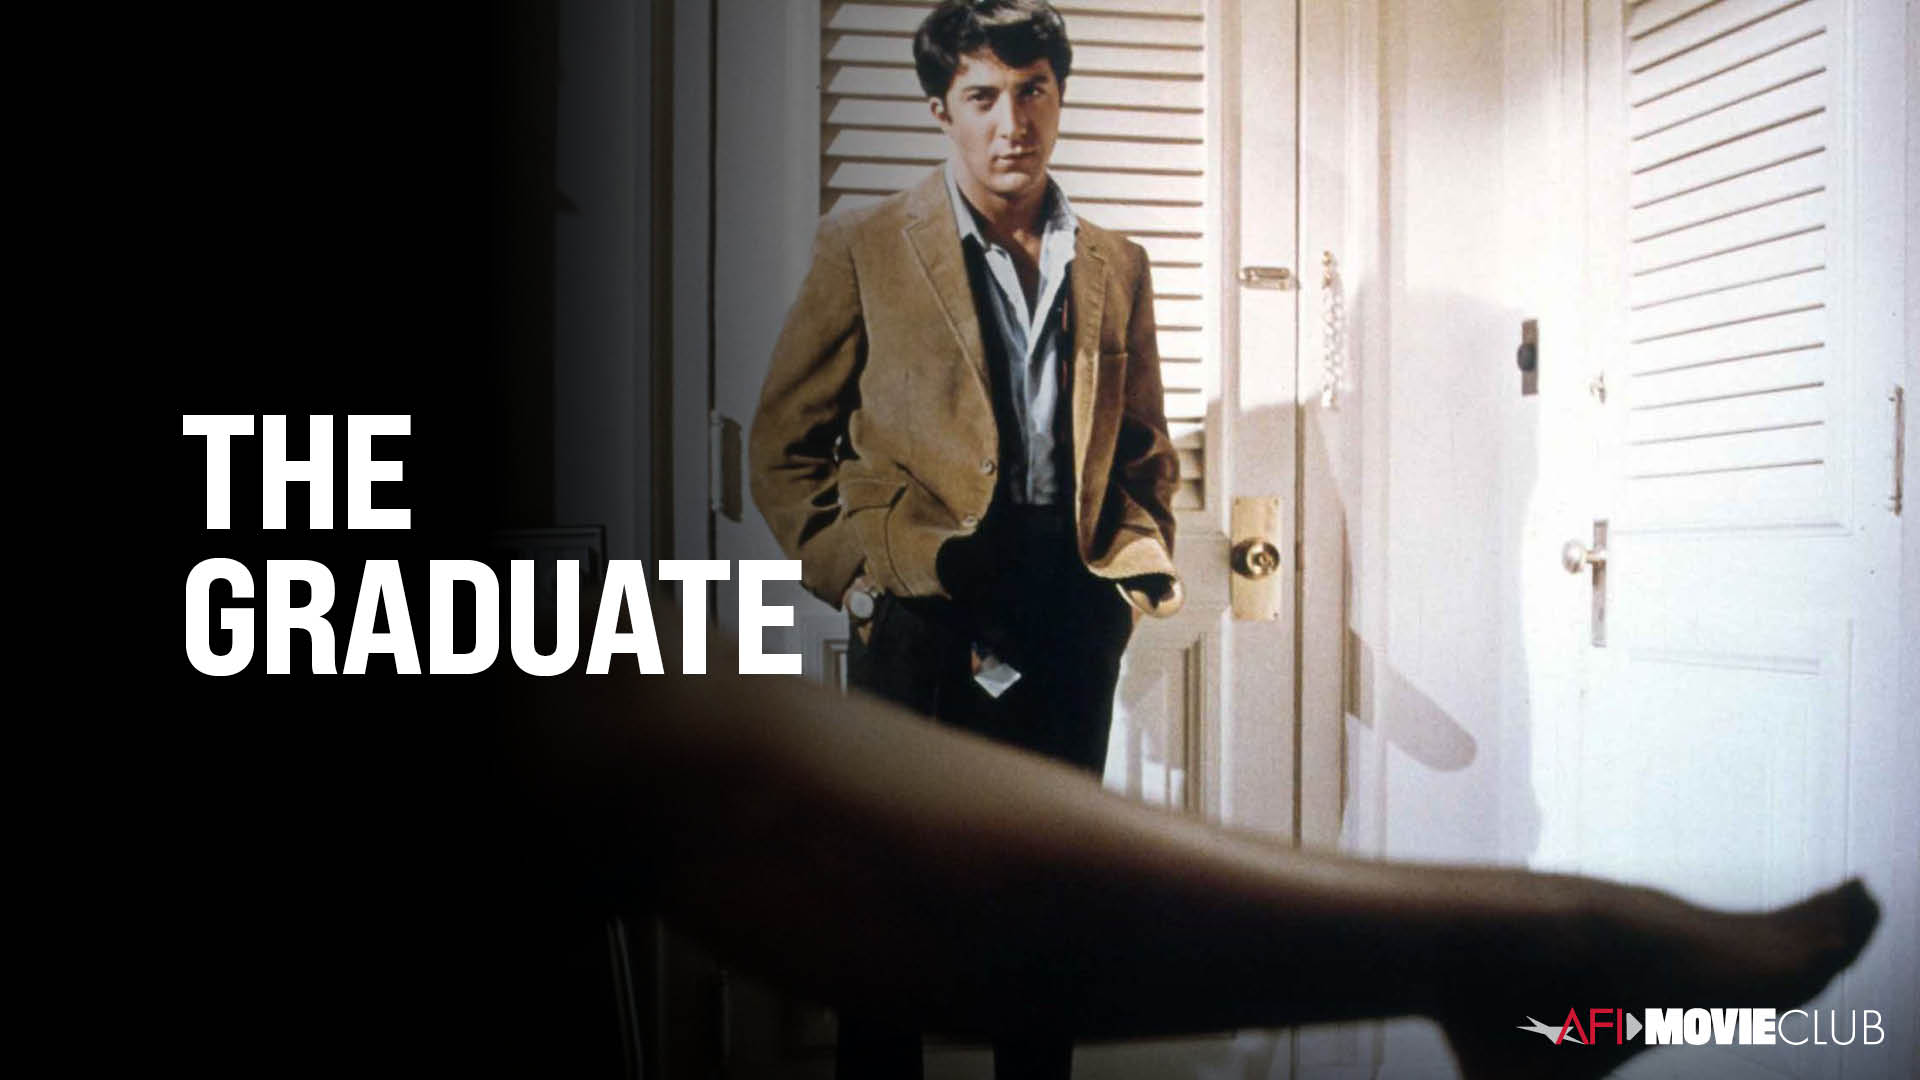 THE GRADUATE Film Still - Dustin Hoffman